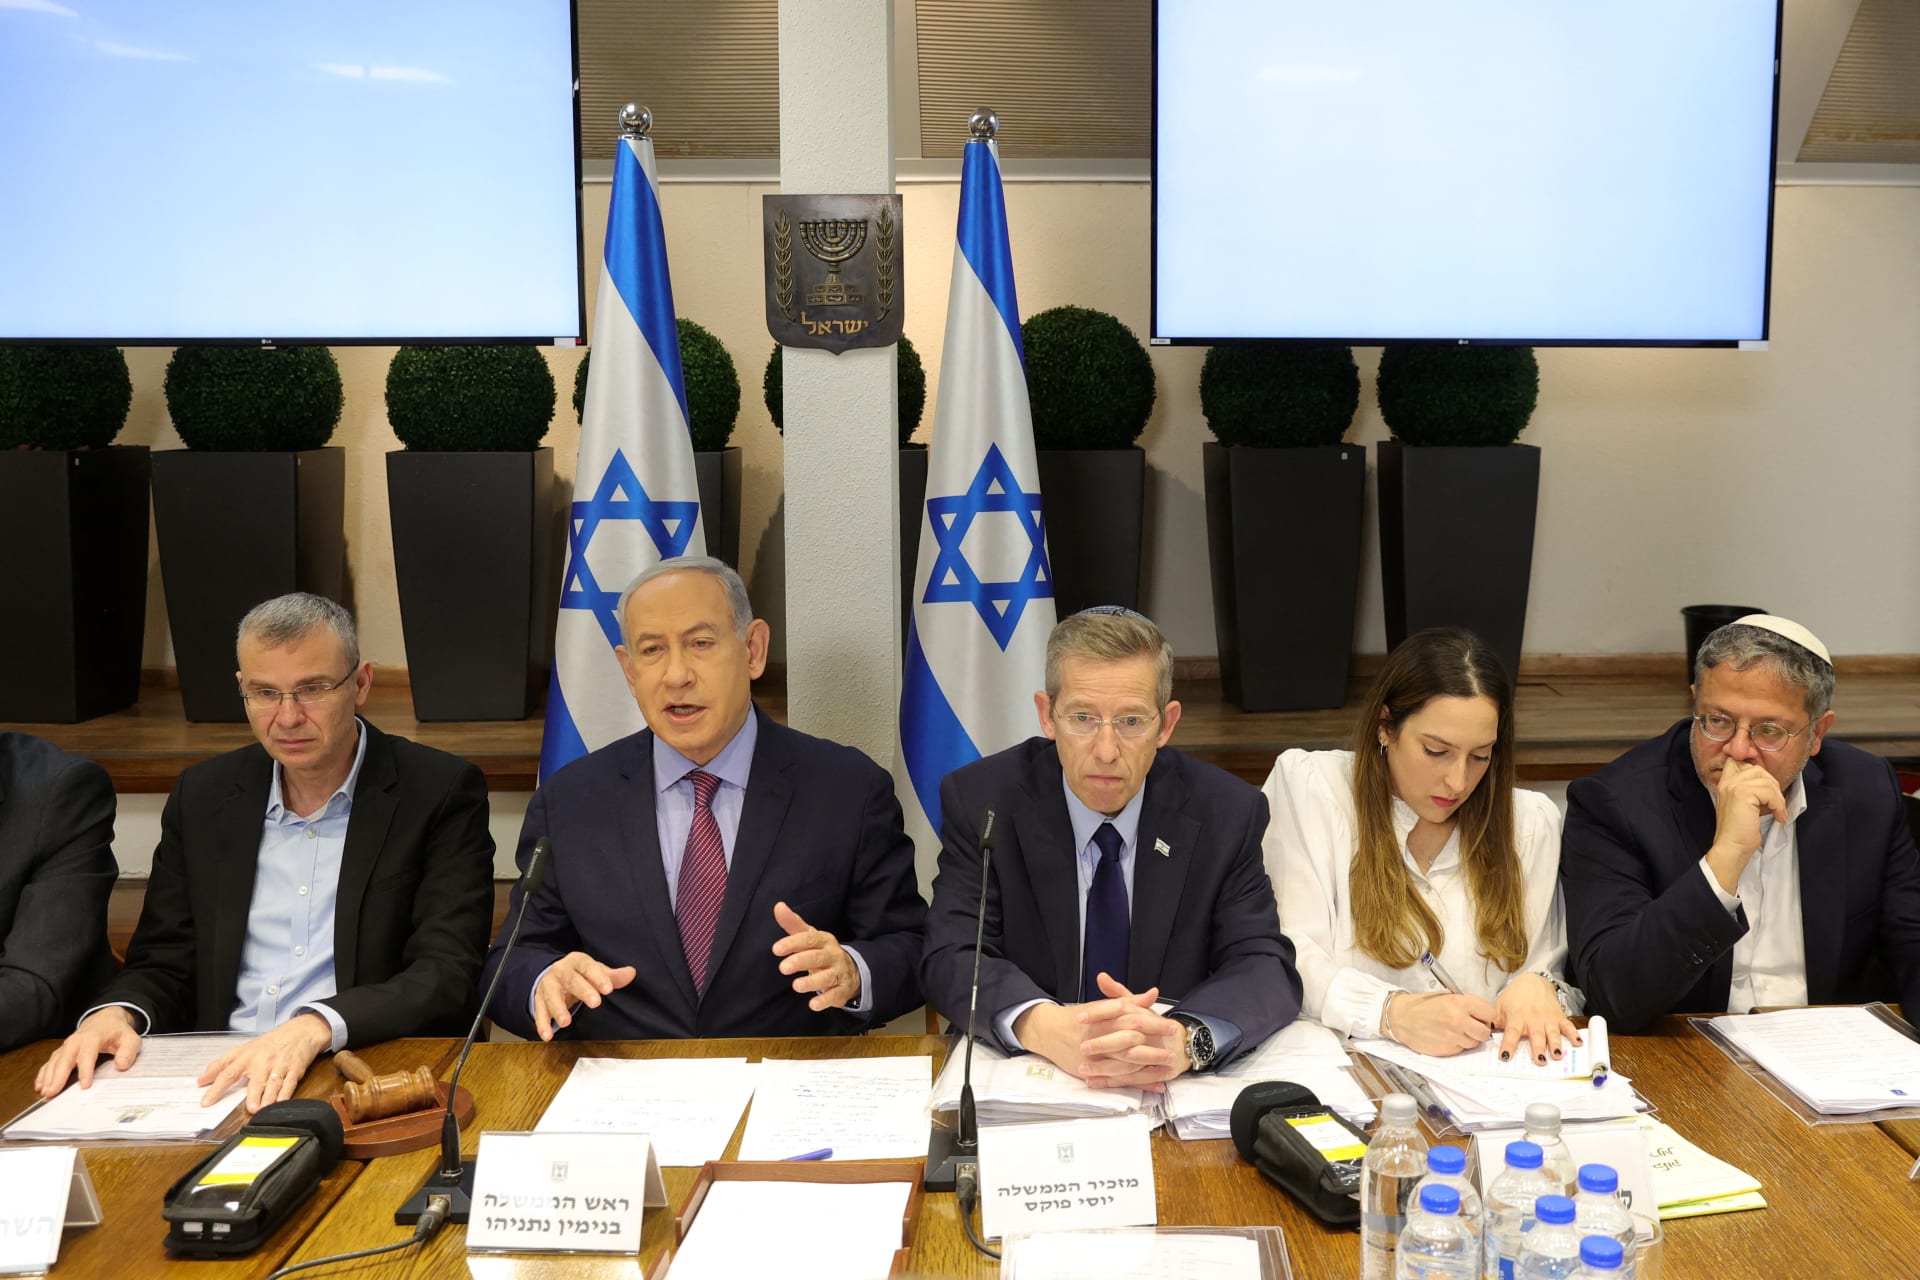 الانقسامات السياسية الداخلية تنفجر في إسرائيل بعد "قتال" في مجلس الوزراء الأمني